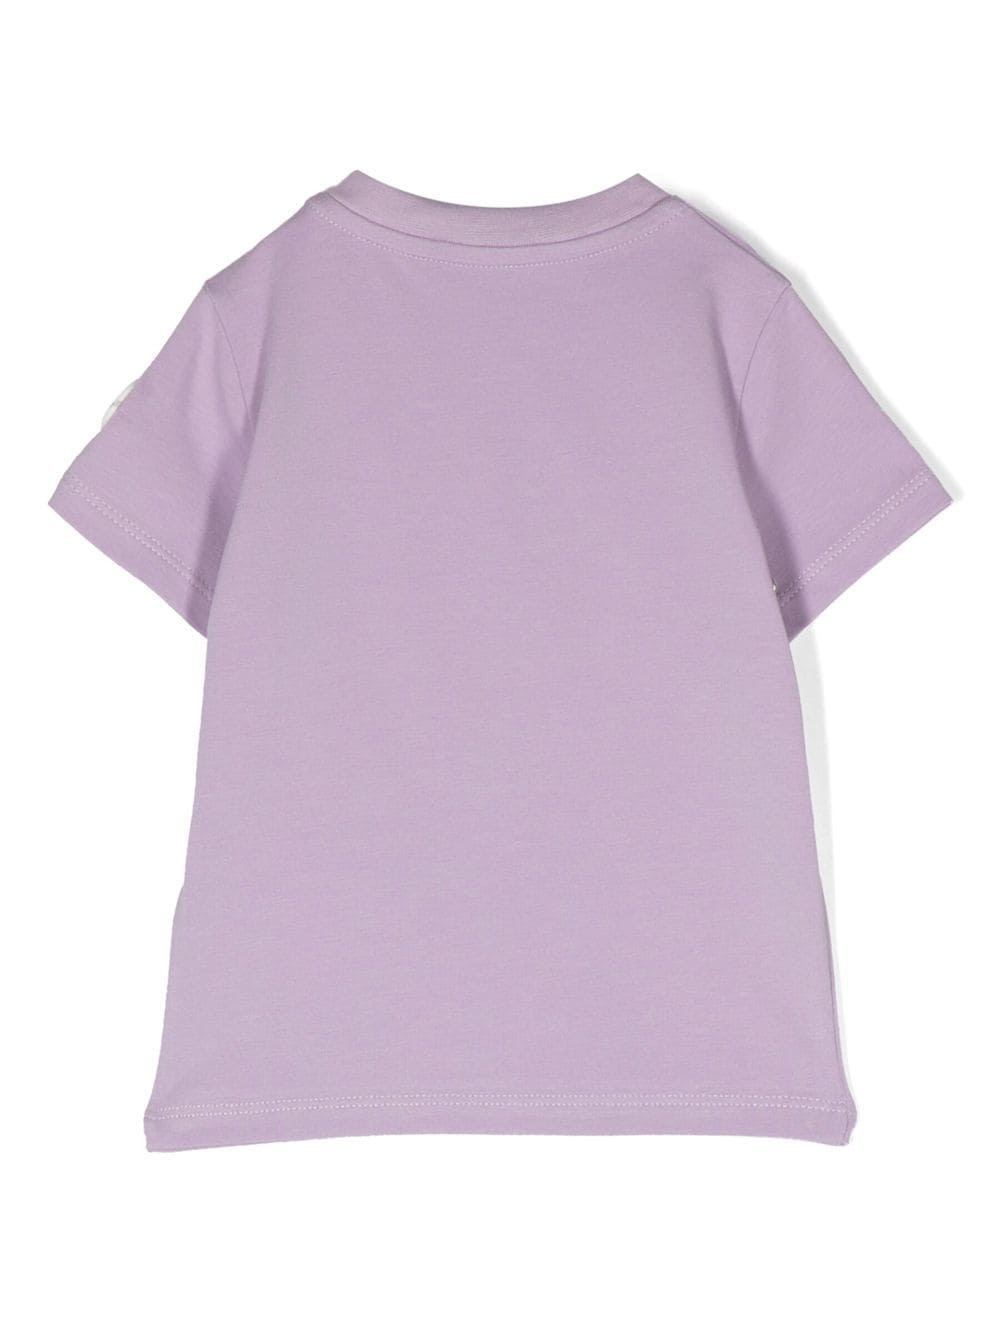 T-shirt lila per neonata con logo